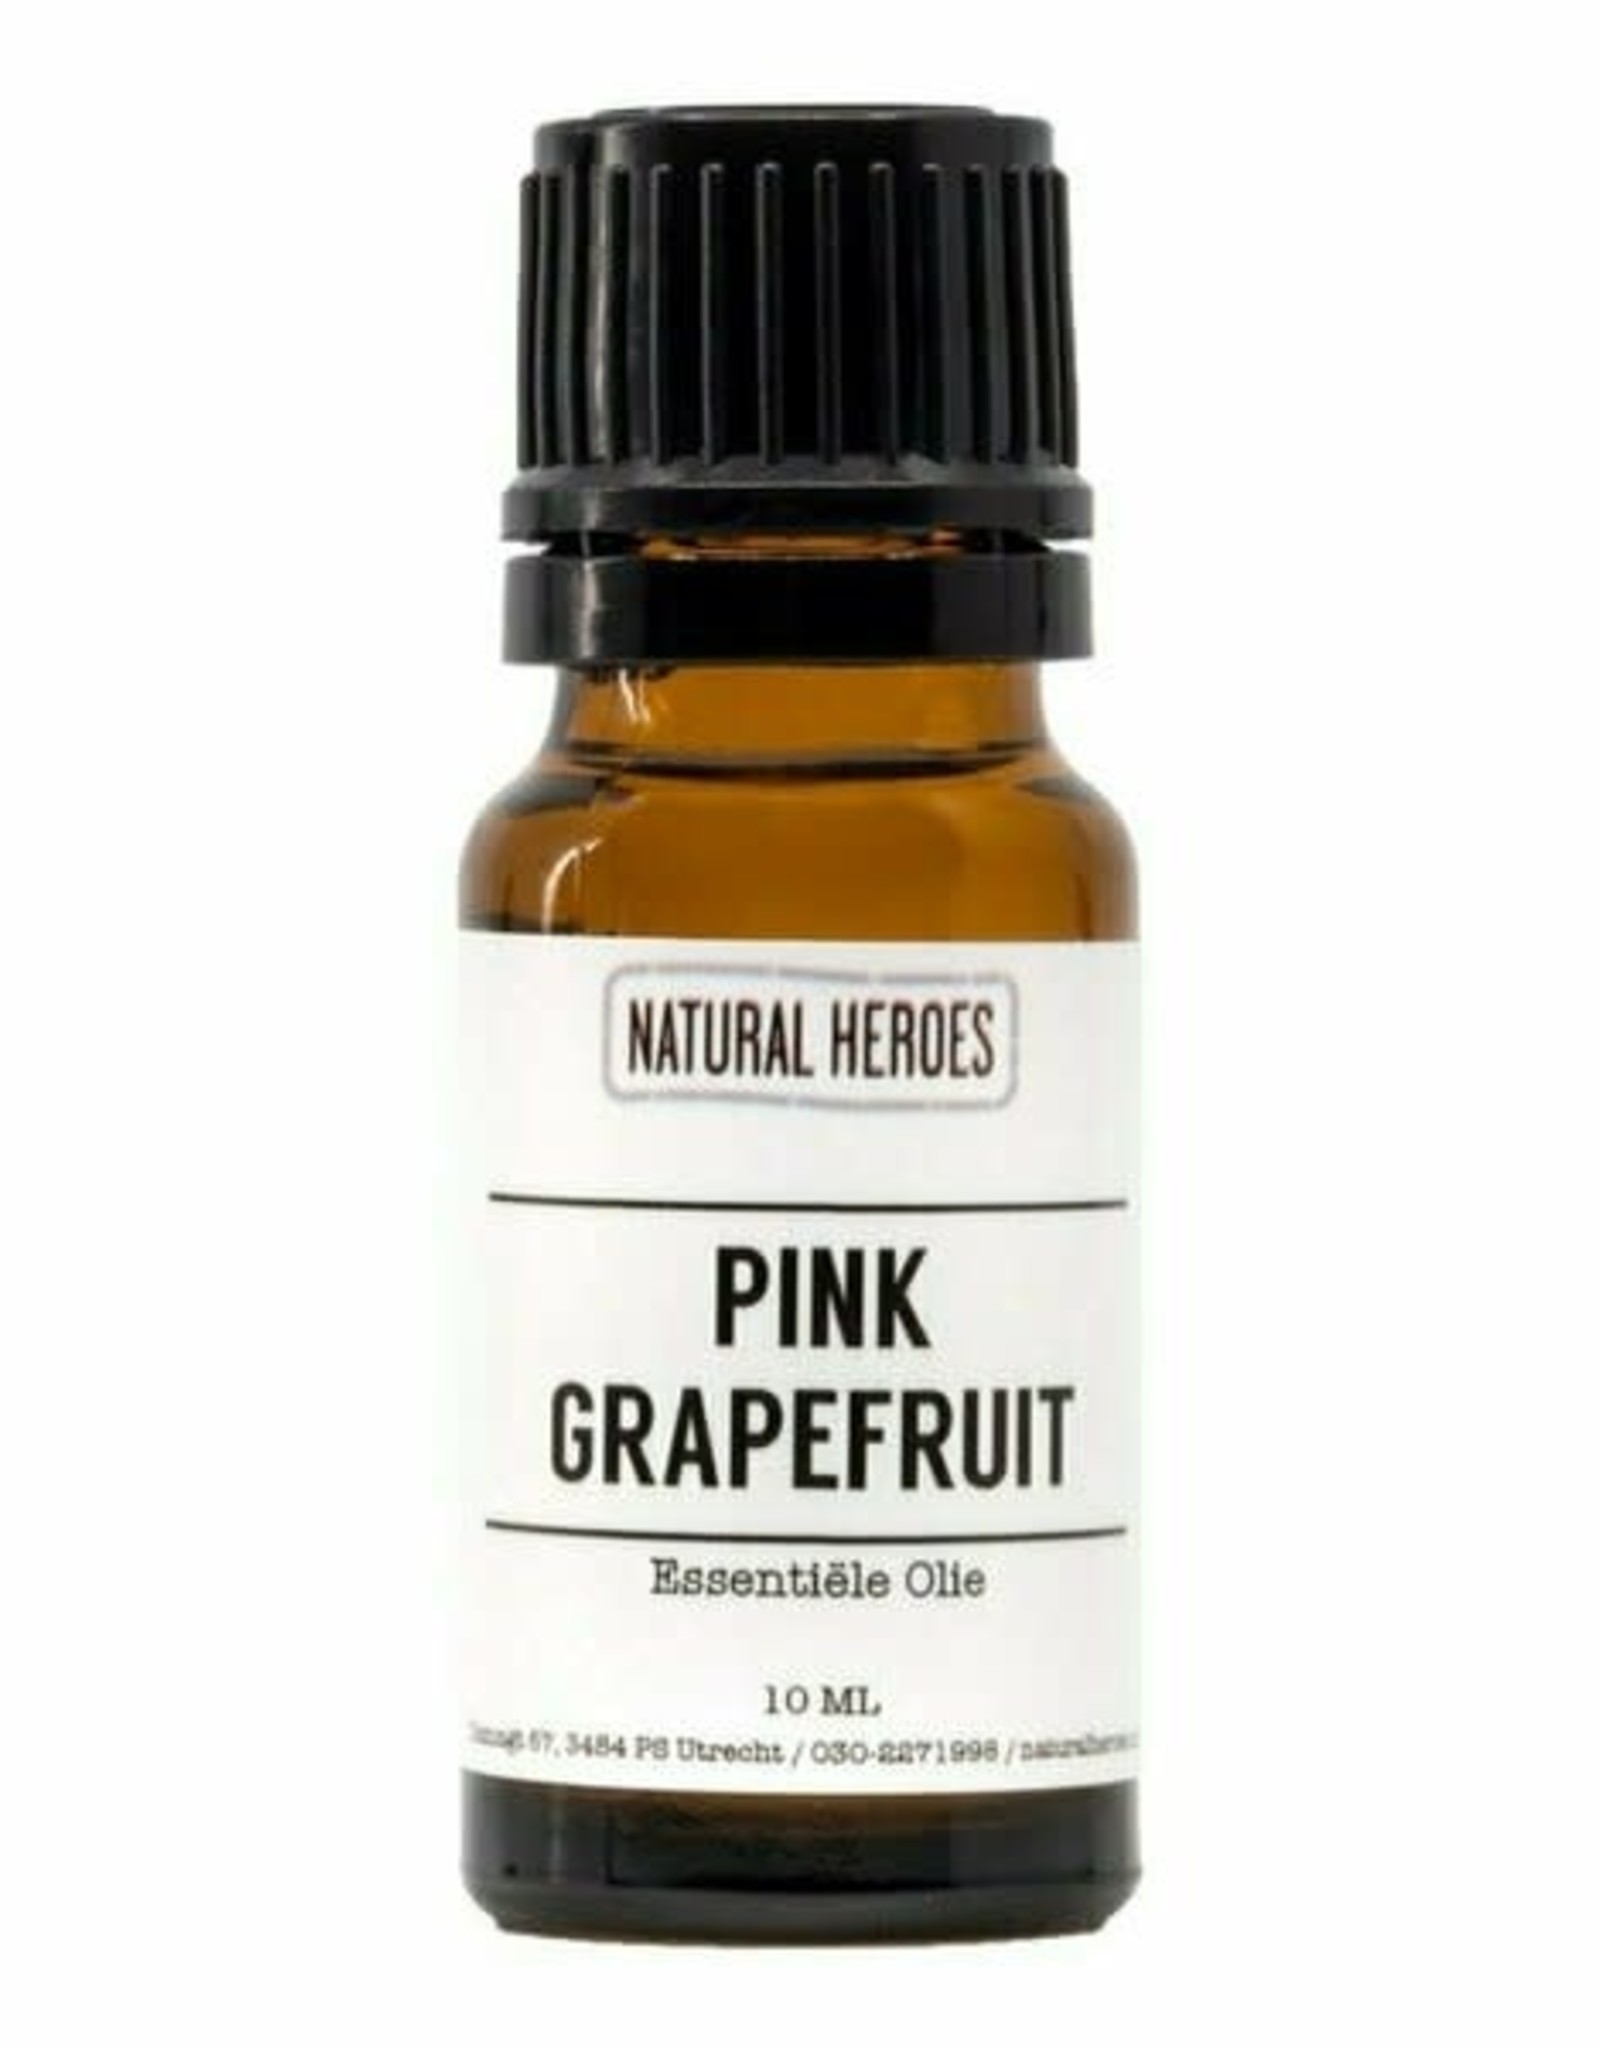 Natural Heroes Pink Grapefruit Essentiële Olie 10ml